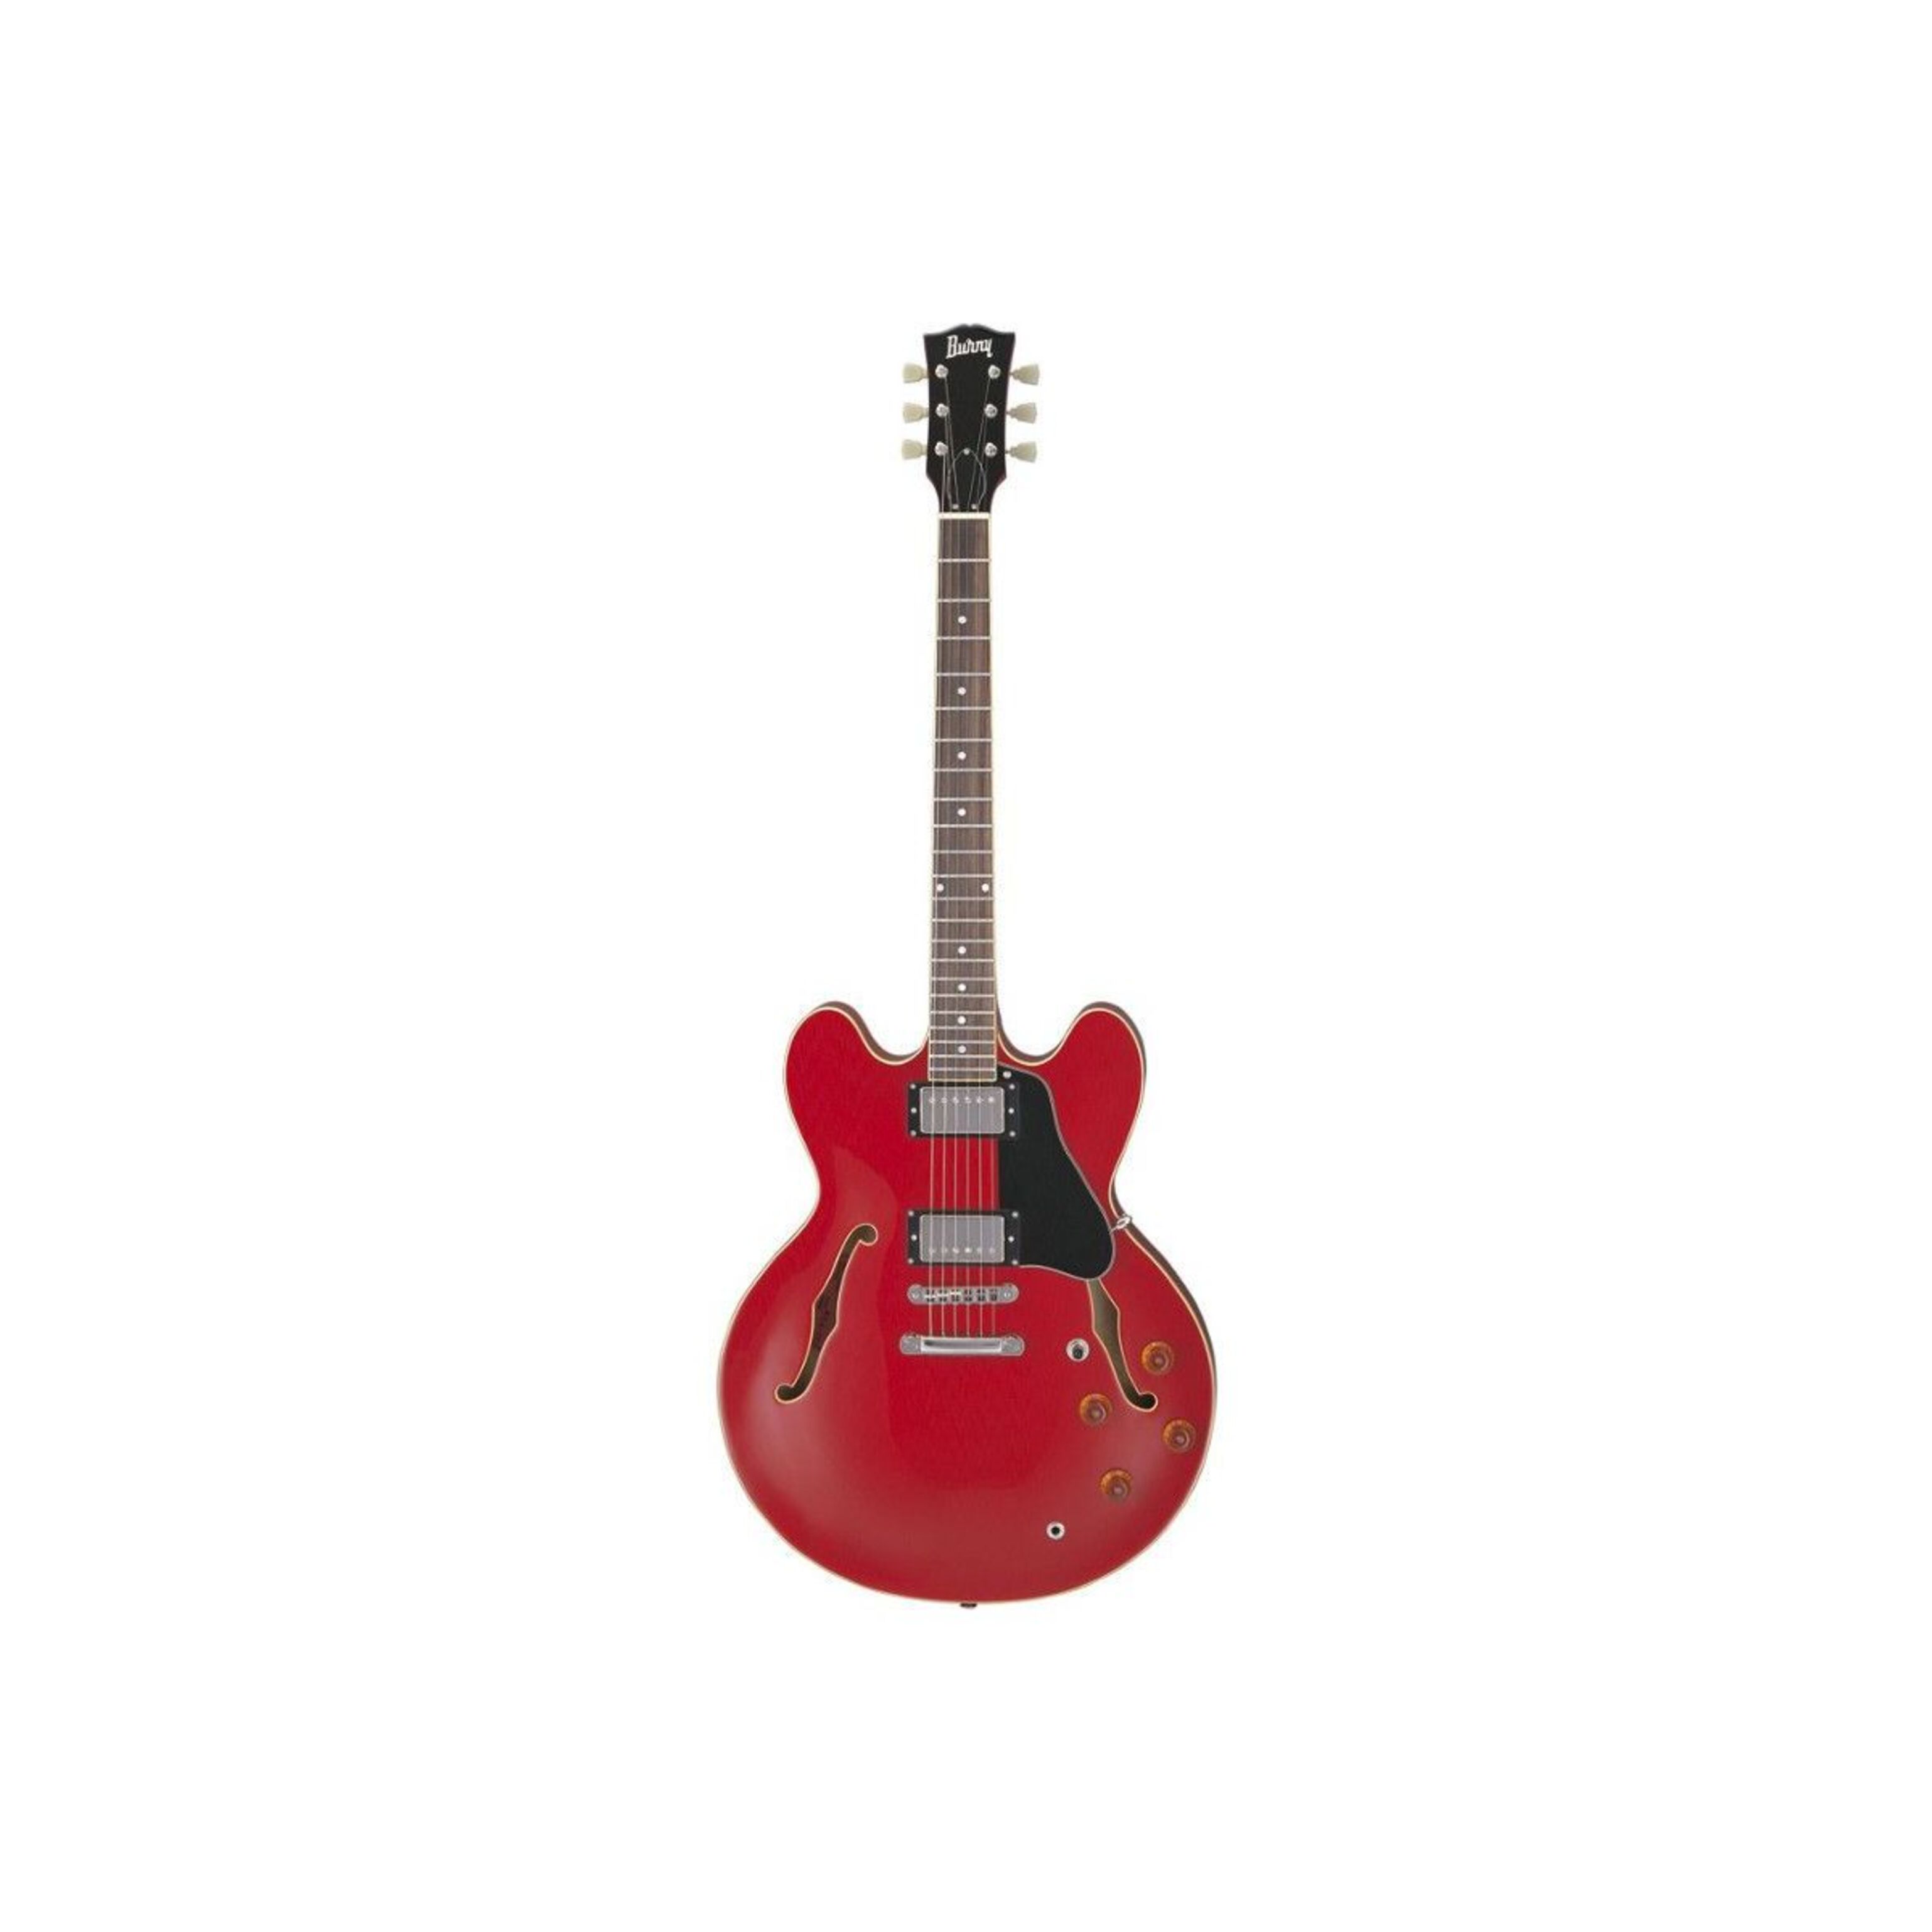 Полуакустические гитары Burny RSA70 CR (кейс в комплекте) полуакустические гитары foix feg feg kg 17 nat